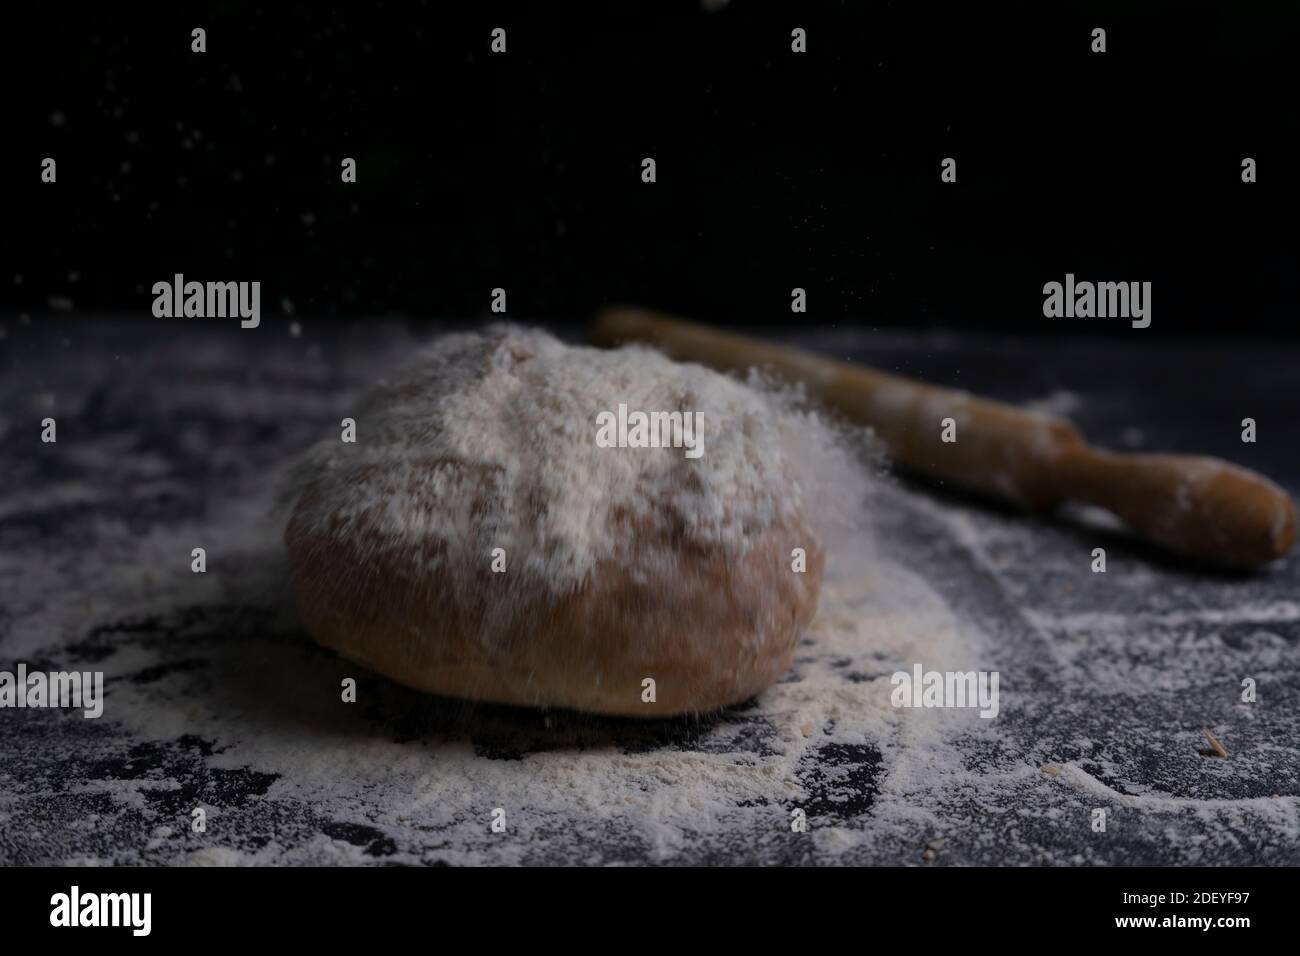 Frisches Brot fliegen mit Mehl Spritzer und Nudelholz auf mehligen schwarzen Tisch.Bäckerei und Backkonzept Hintergrund.Copy Space. Stockfoto